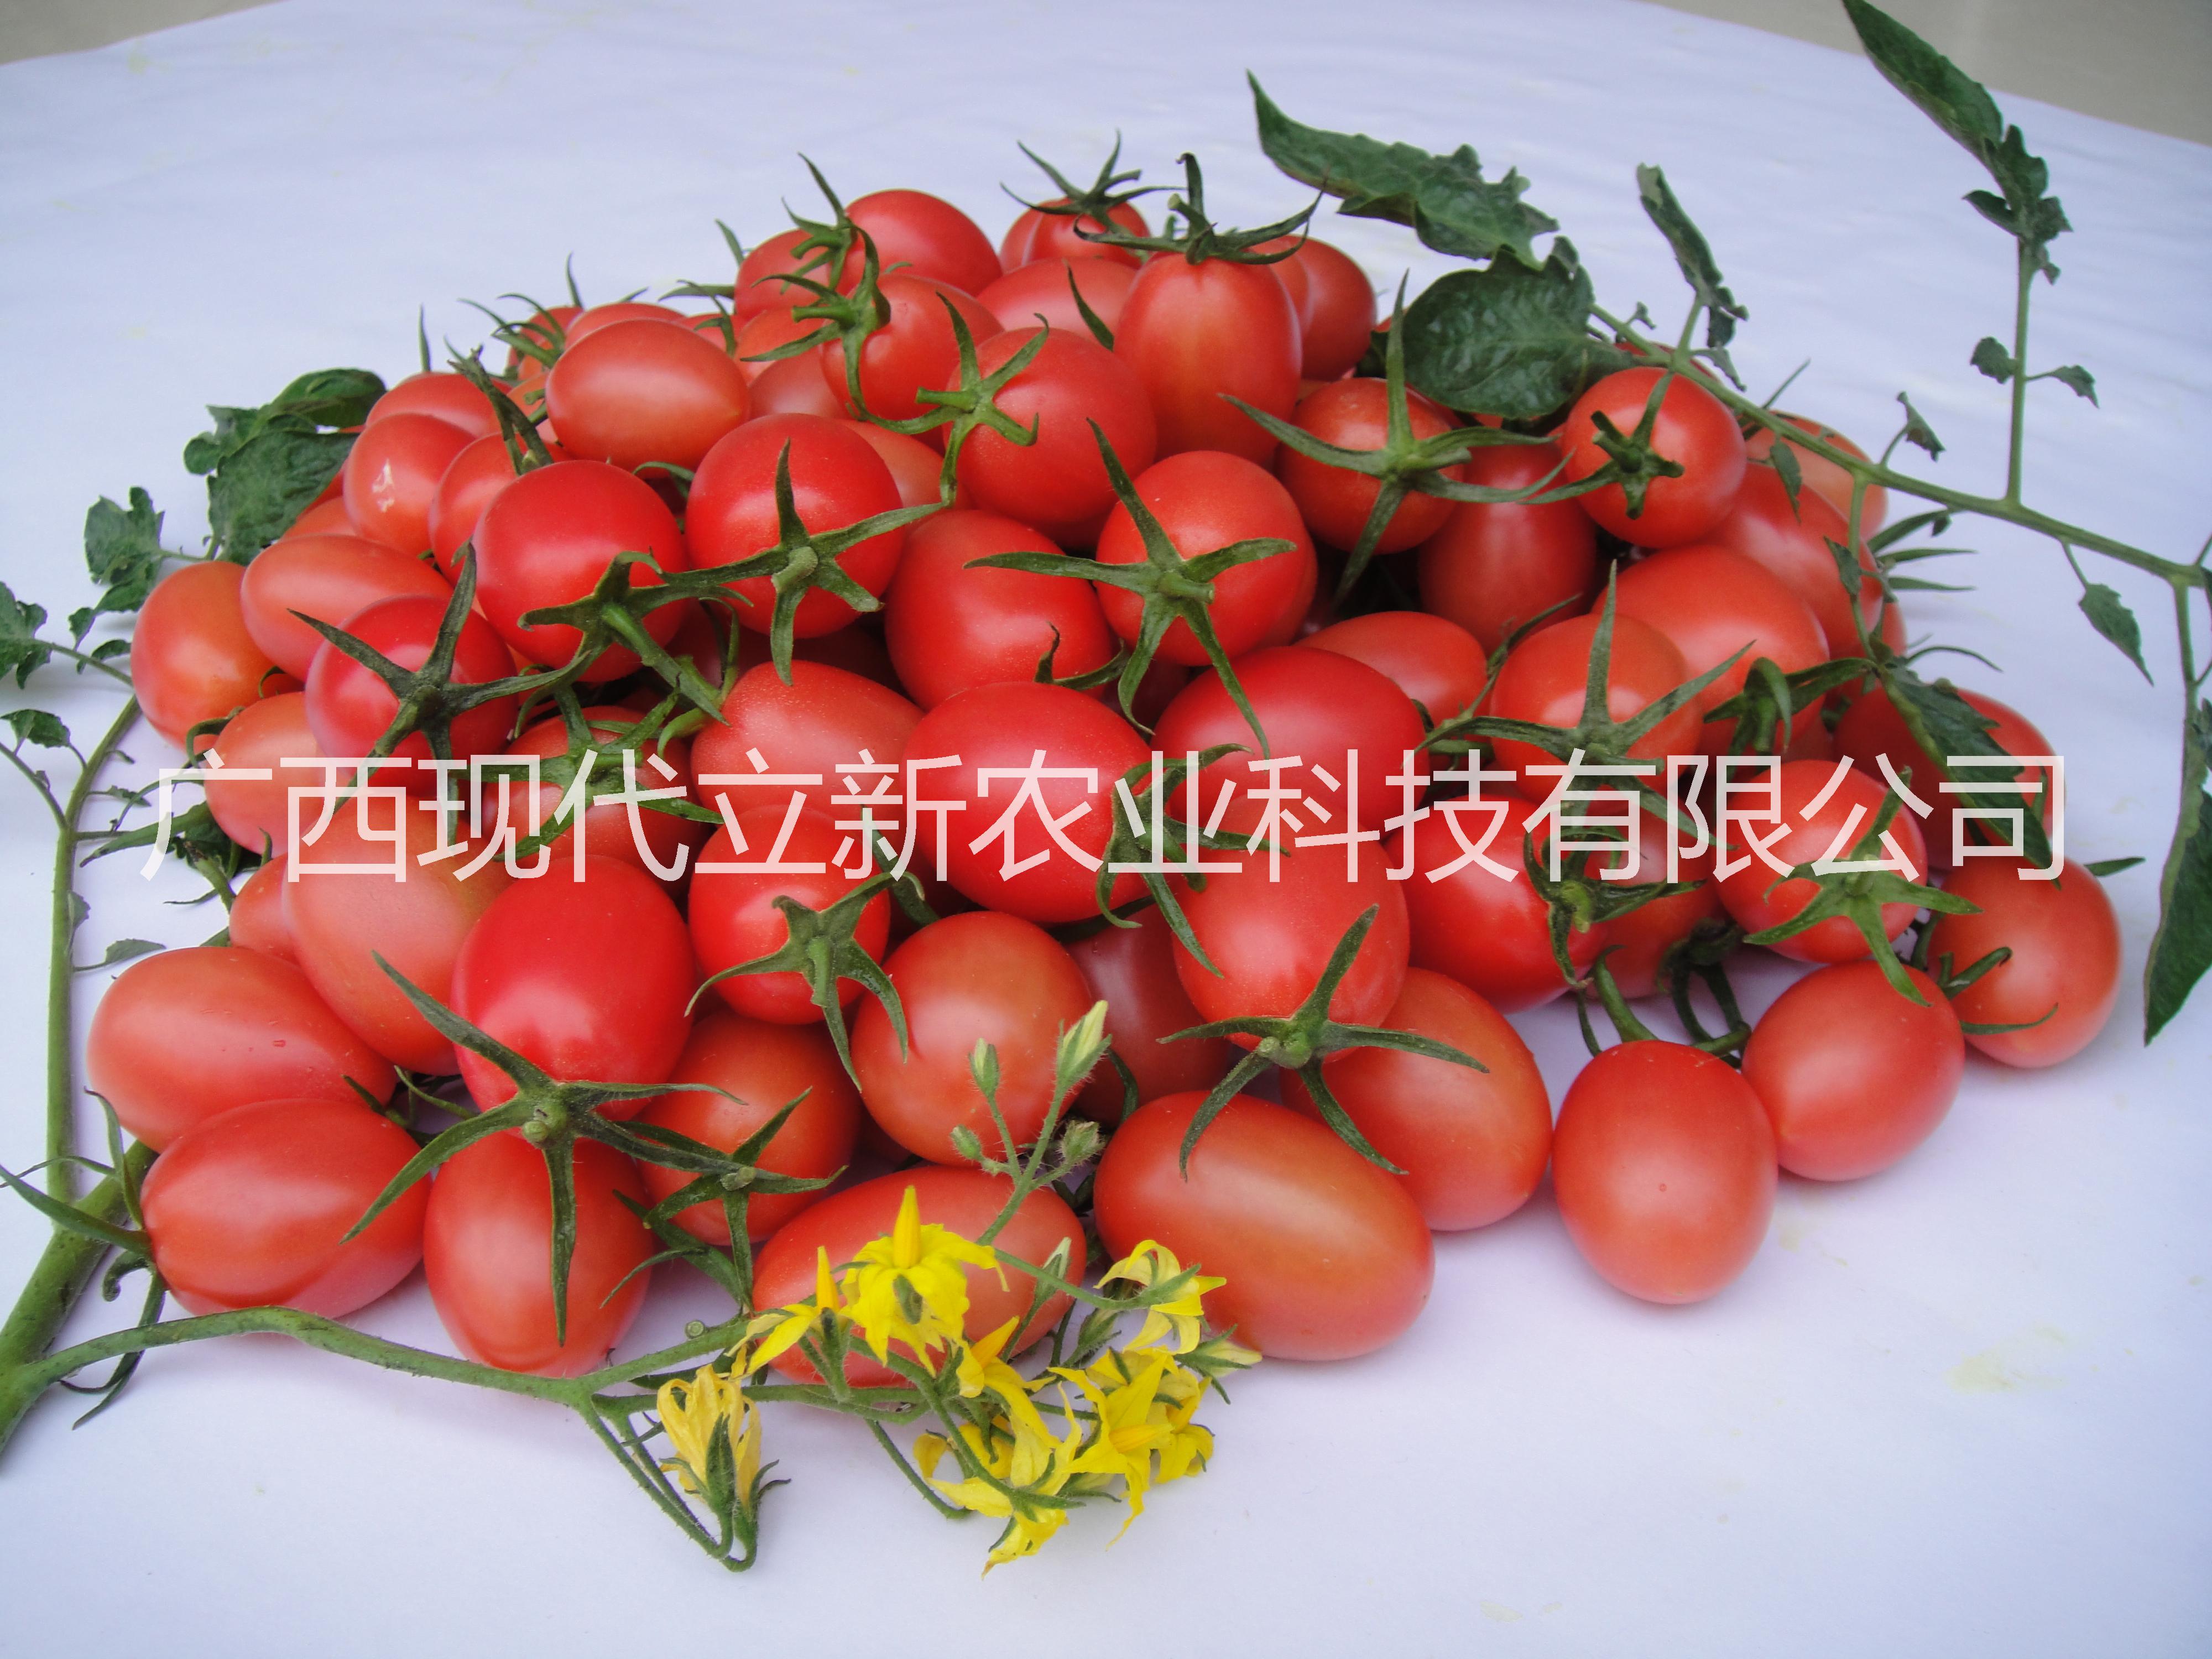 多彩圣女果种子 多彩西红柿种子  多彩圣女果种子 彩色西红柿种子 广西水果公司企业现代立新唯独供应价格